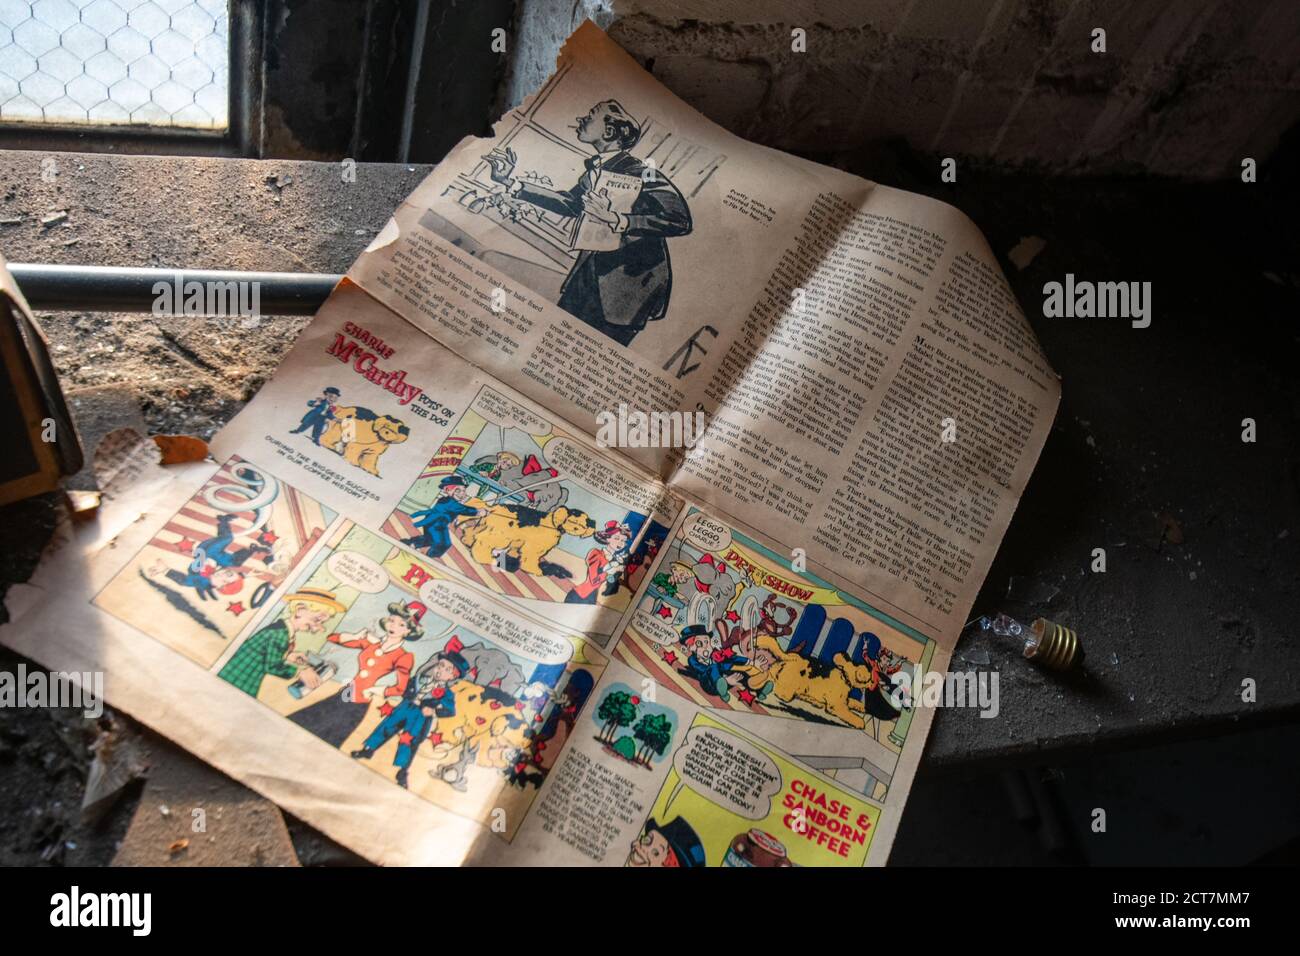 NEWARK, NEW JERSEY - 17. JULI 2020: Eine alte Zeitung sitzt vergessen im verlassenen Proctor's Palace Theater in Newark New Jersey Stockfoto